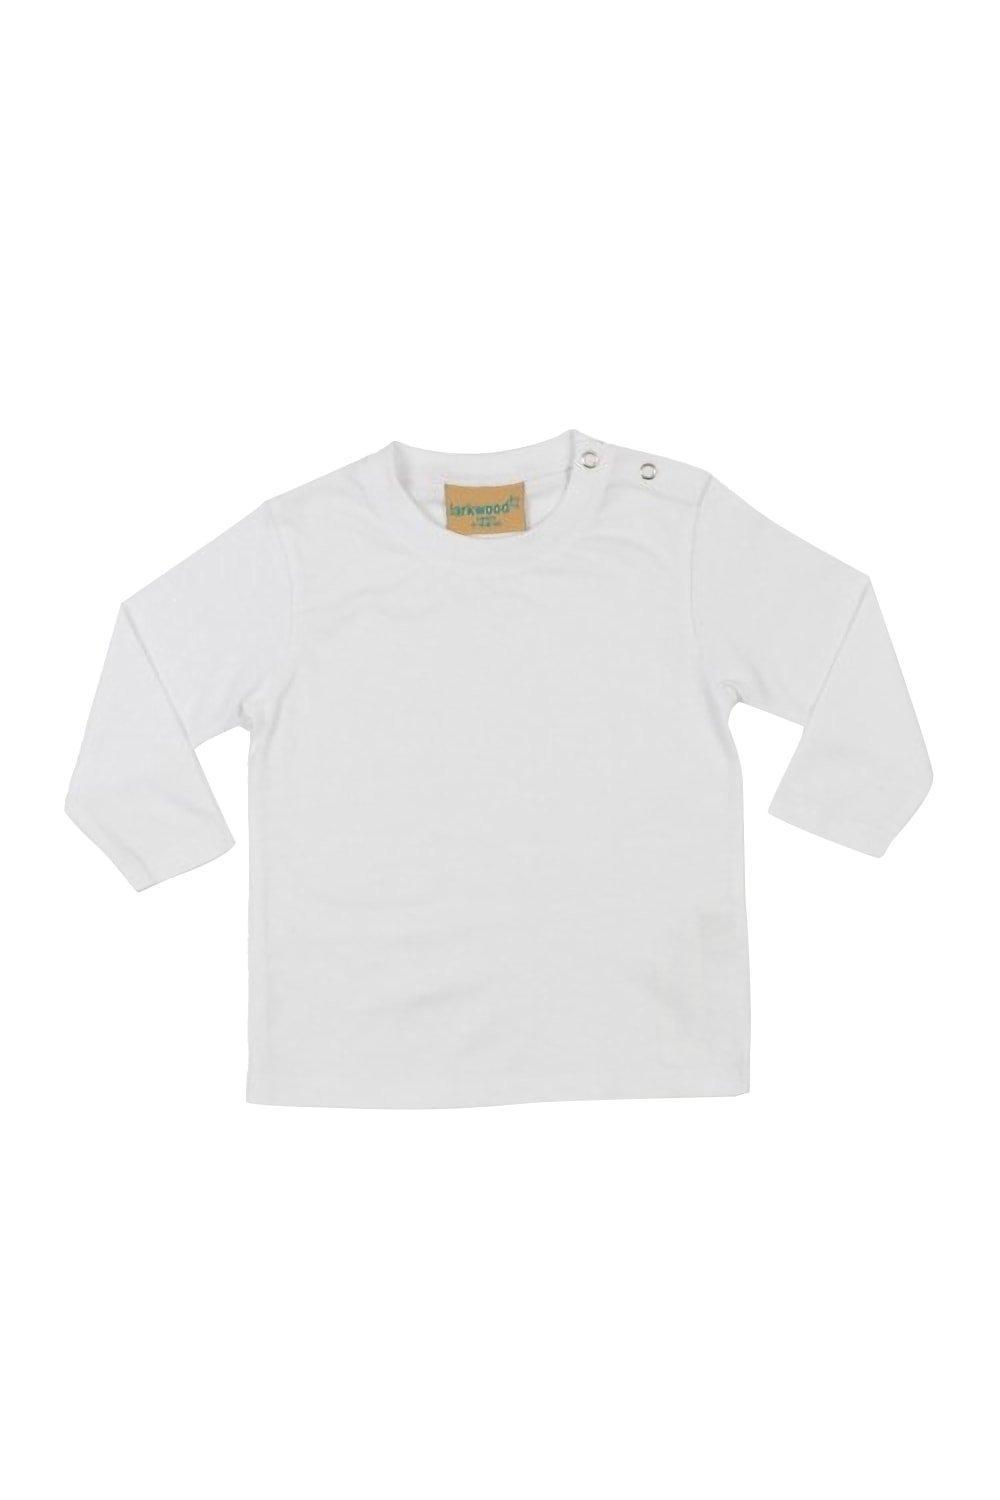 Простая футболка с длинным рукавом Larkwood, белый органическая футболка larkwood белый